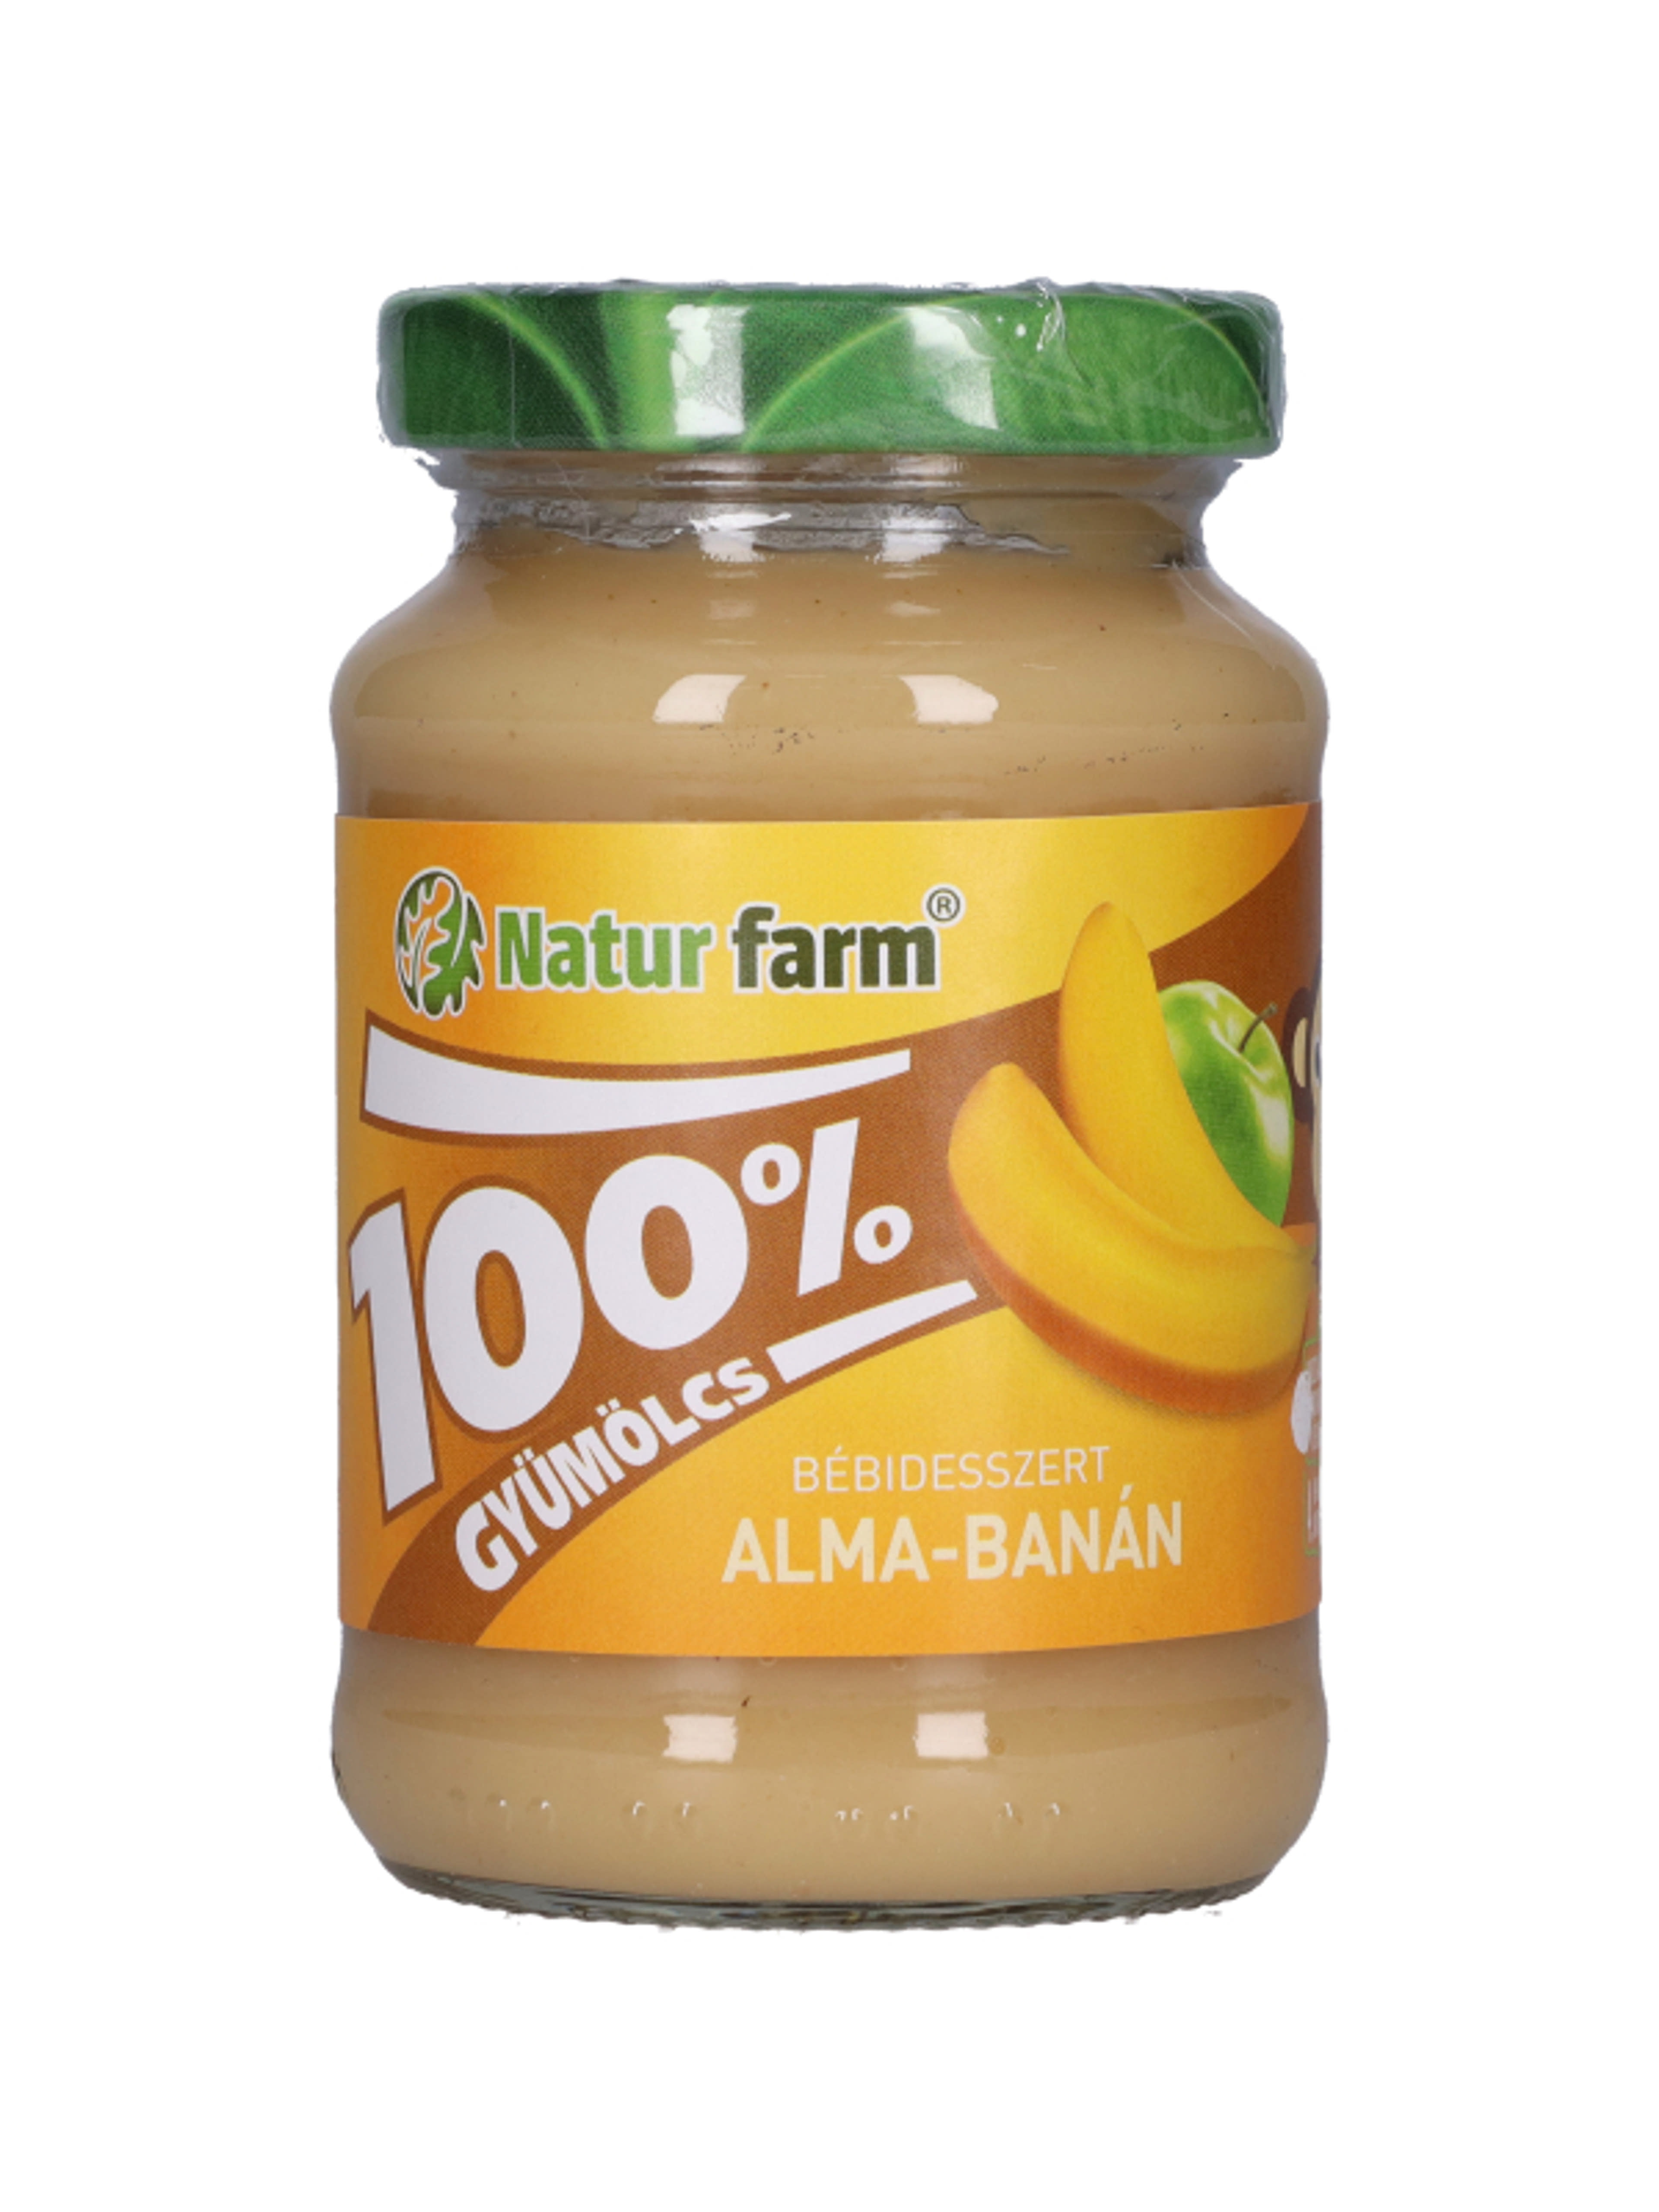 Naturfarm bébidesszert 100% gyümölcs alma-banán - 190 g